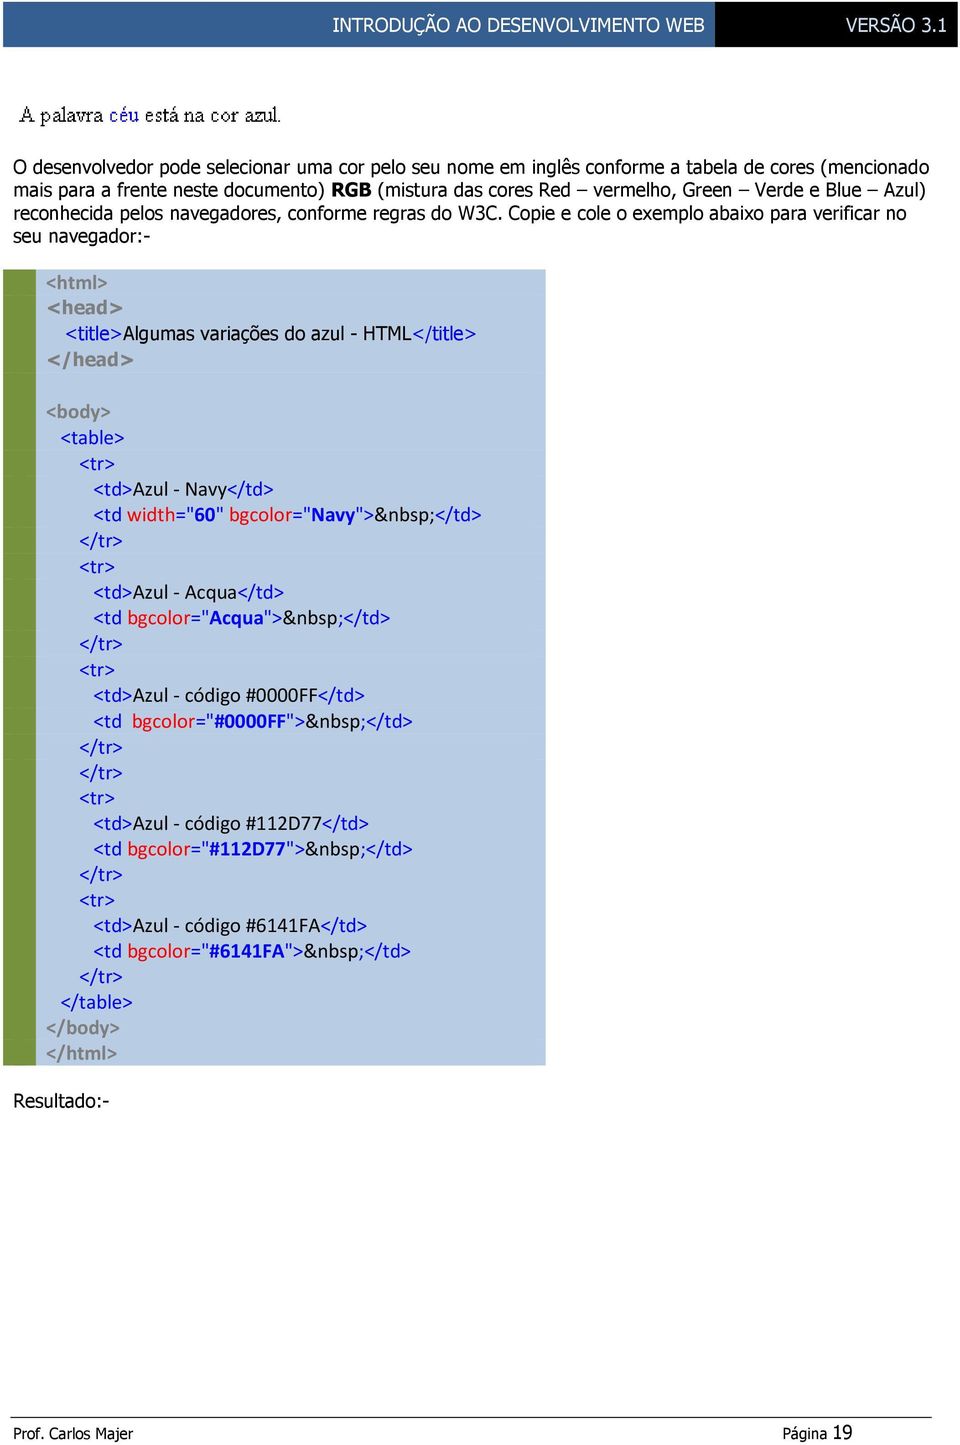 Copie e cole o exemplo abaixo para verificar no seu navegador:- <html> <head> <title>algumas variações do azul - HTML</title> </head> <body> <table> <td>azul - Navy</td> <td width="60"